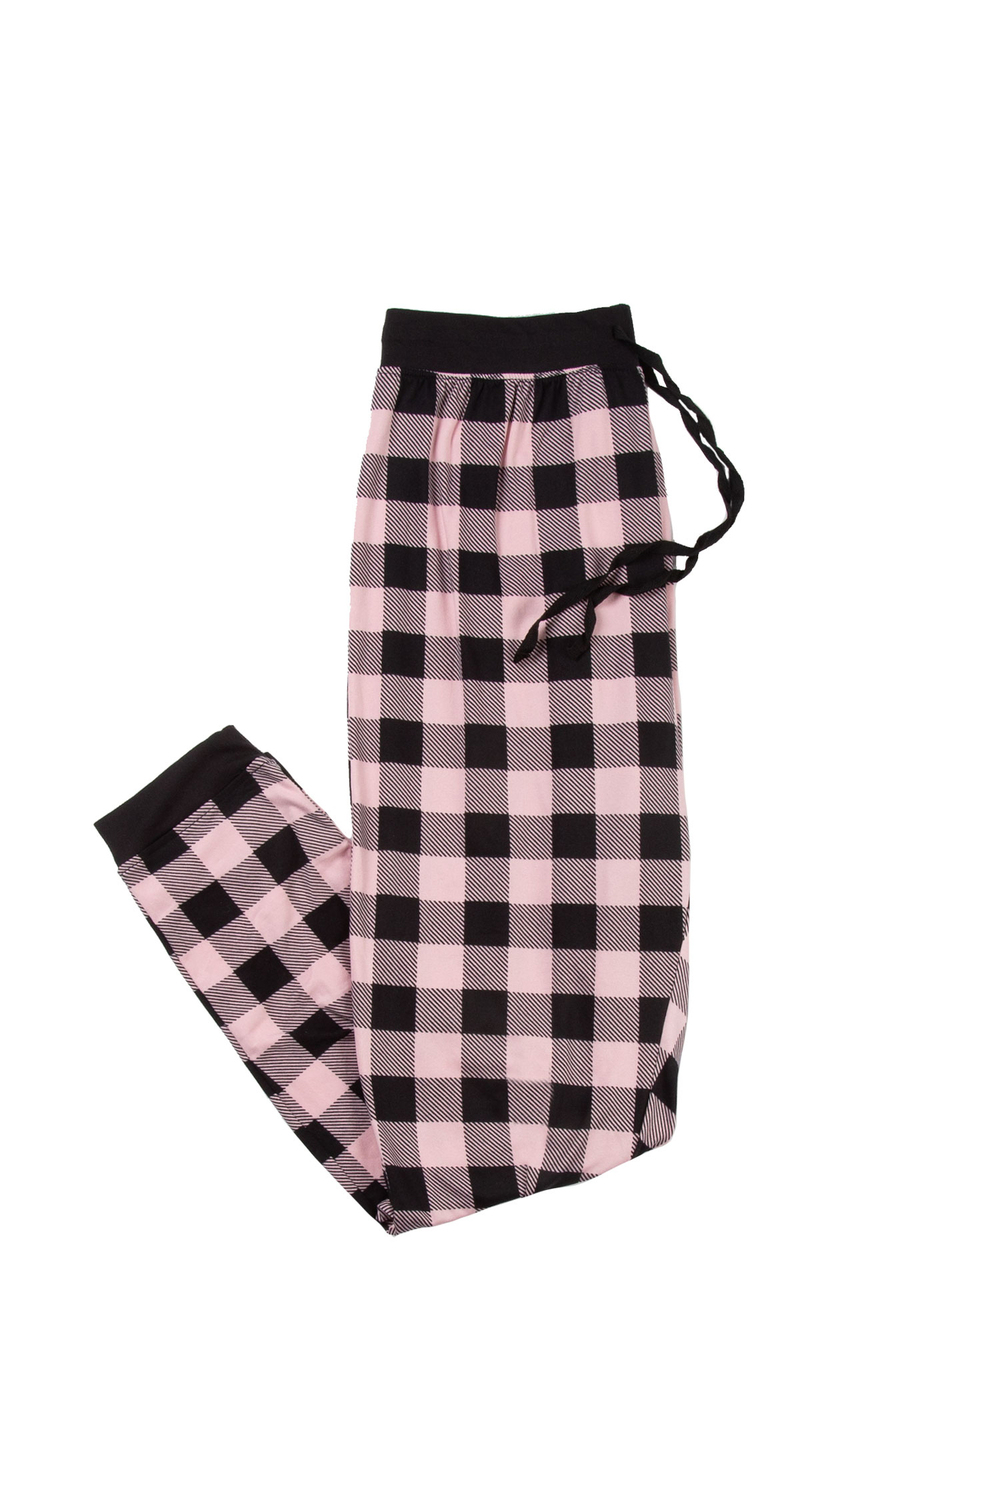 Pantalon de pyjama style jogger en tricot extensible, carreaux roses/noirs, très grand (TG)